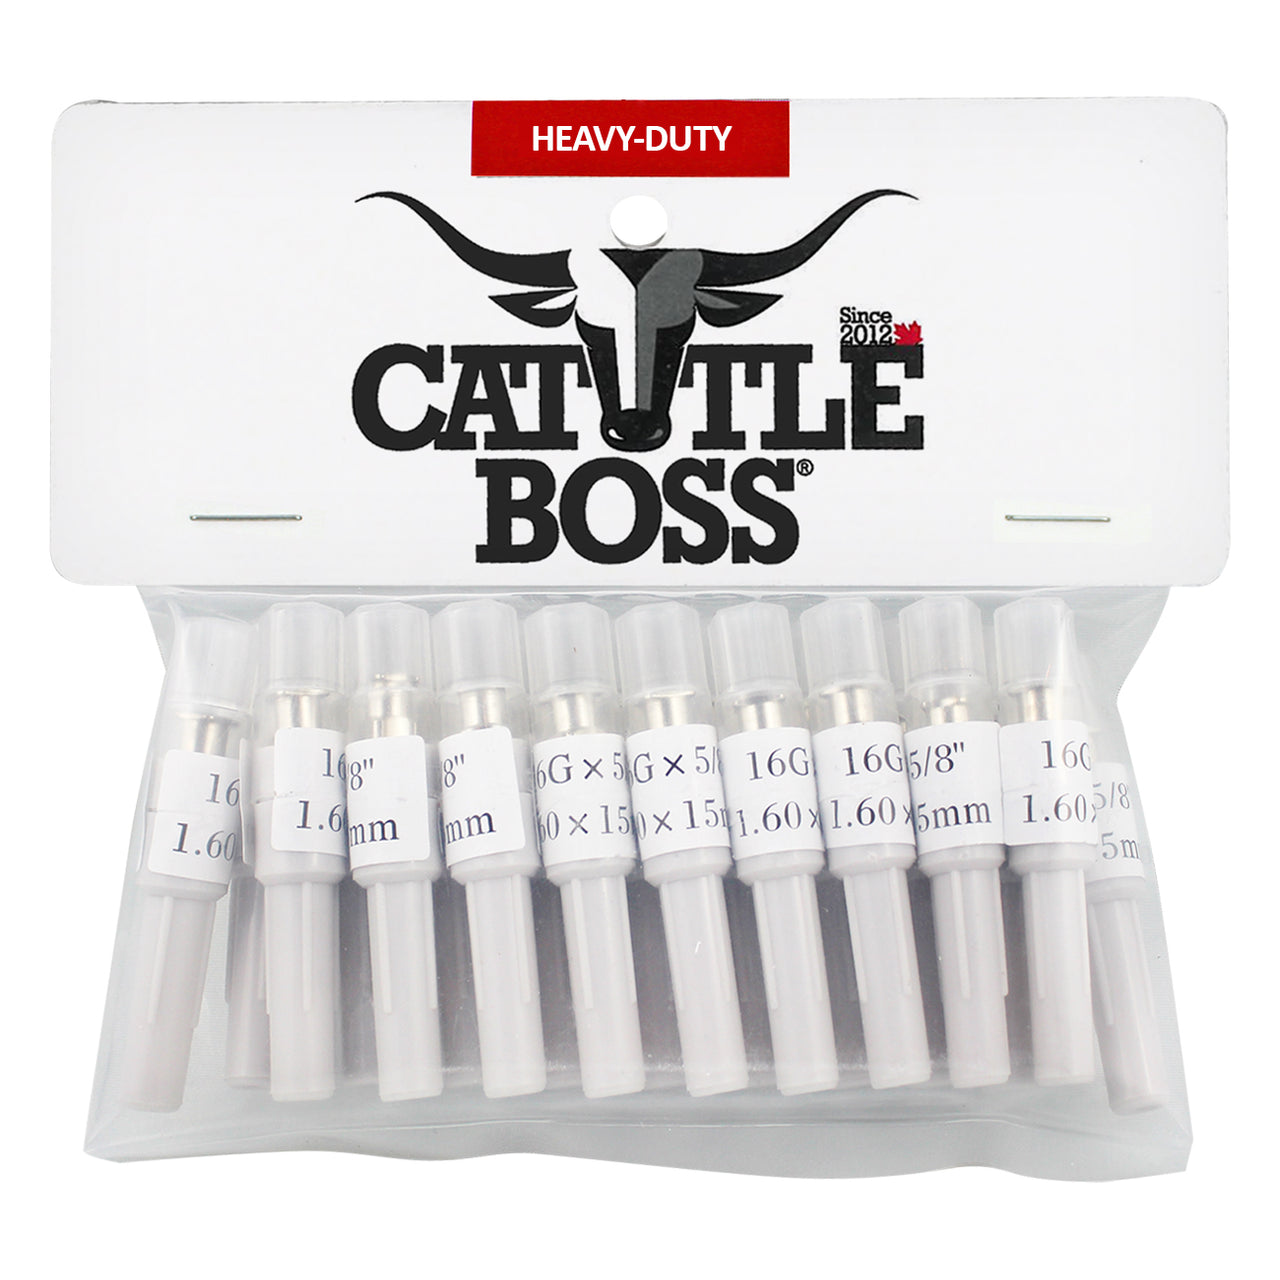 Cattle Boss Heavy-Duty Brass Hub 16 X 5/8 (20 Pack) - Cattle Boss - Canada